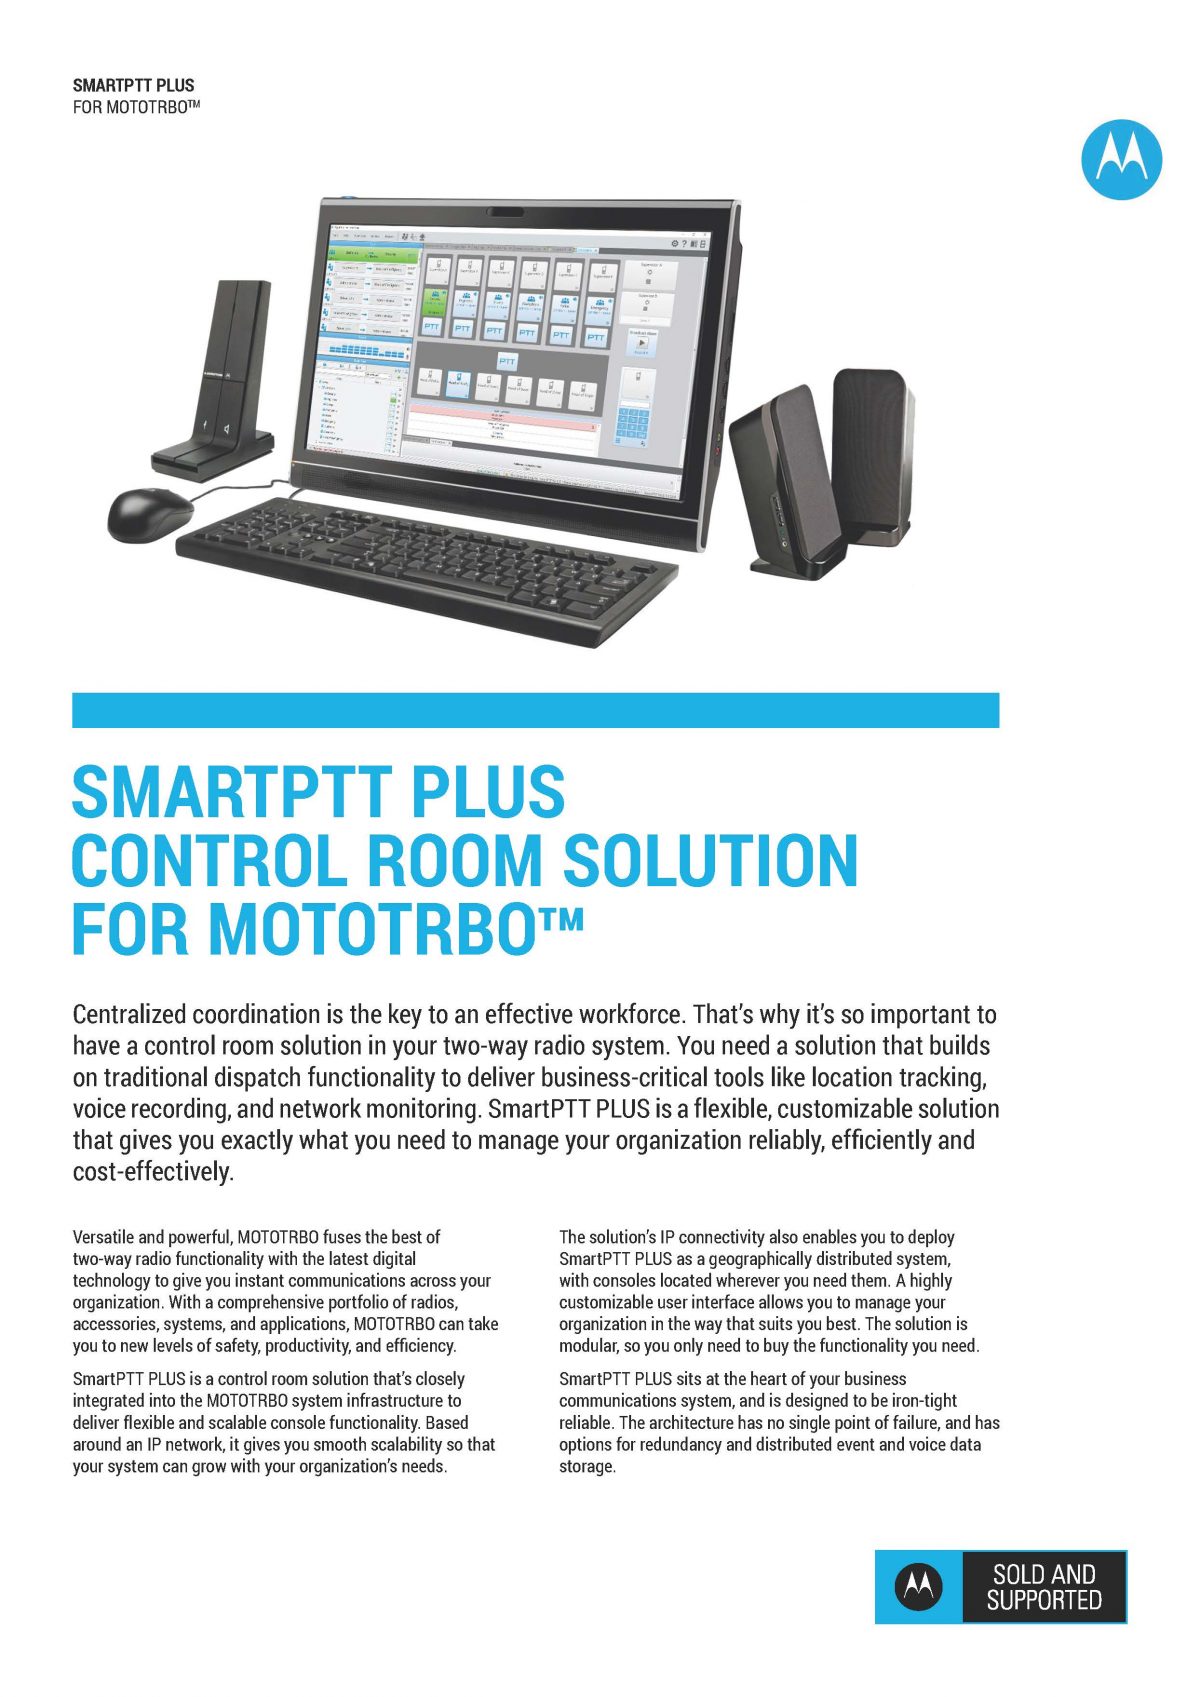 SmartPTT PLUS for MOTOTRBO Brochure